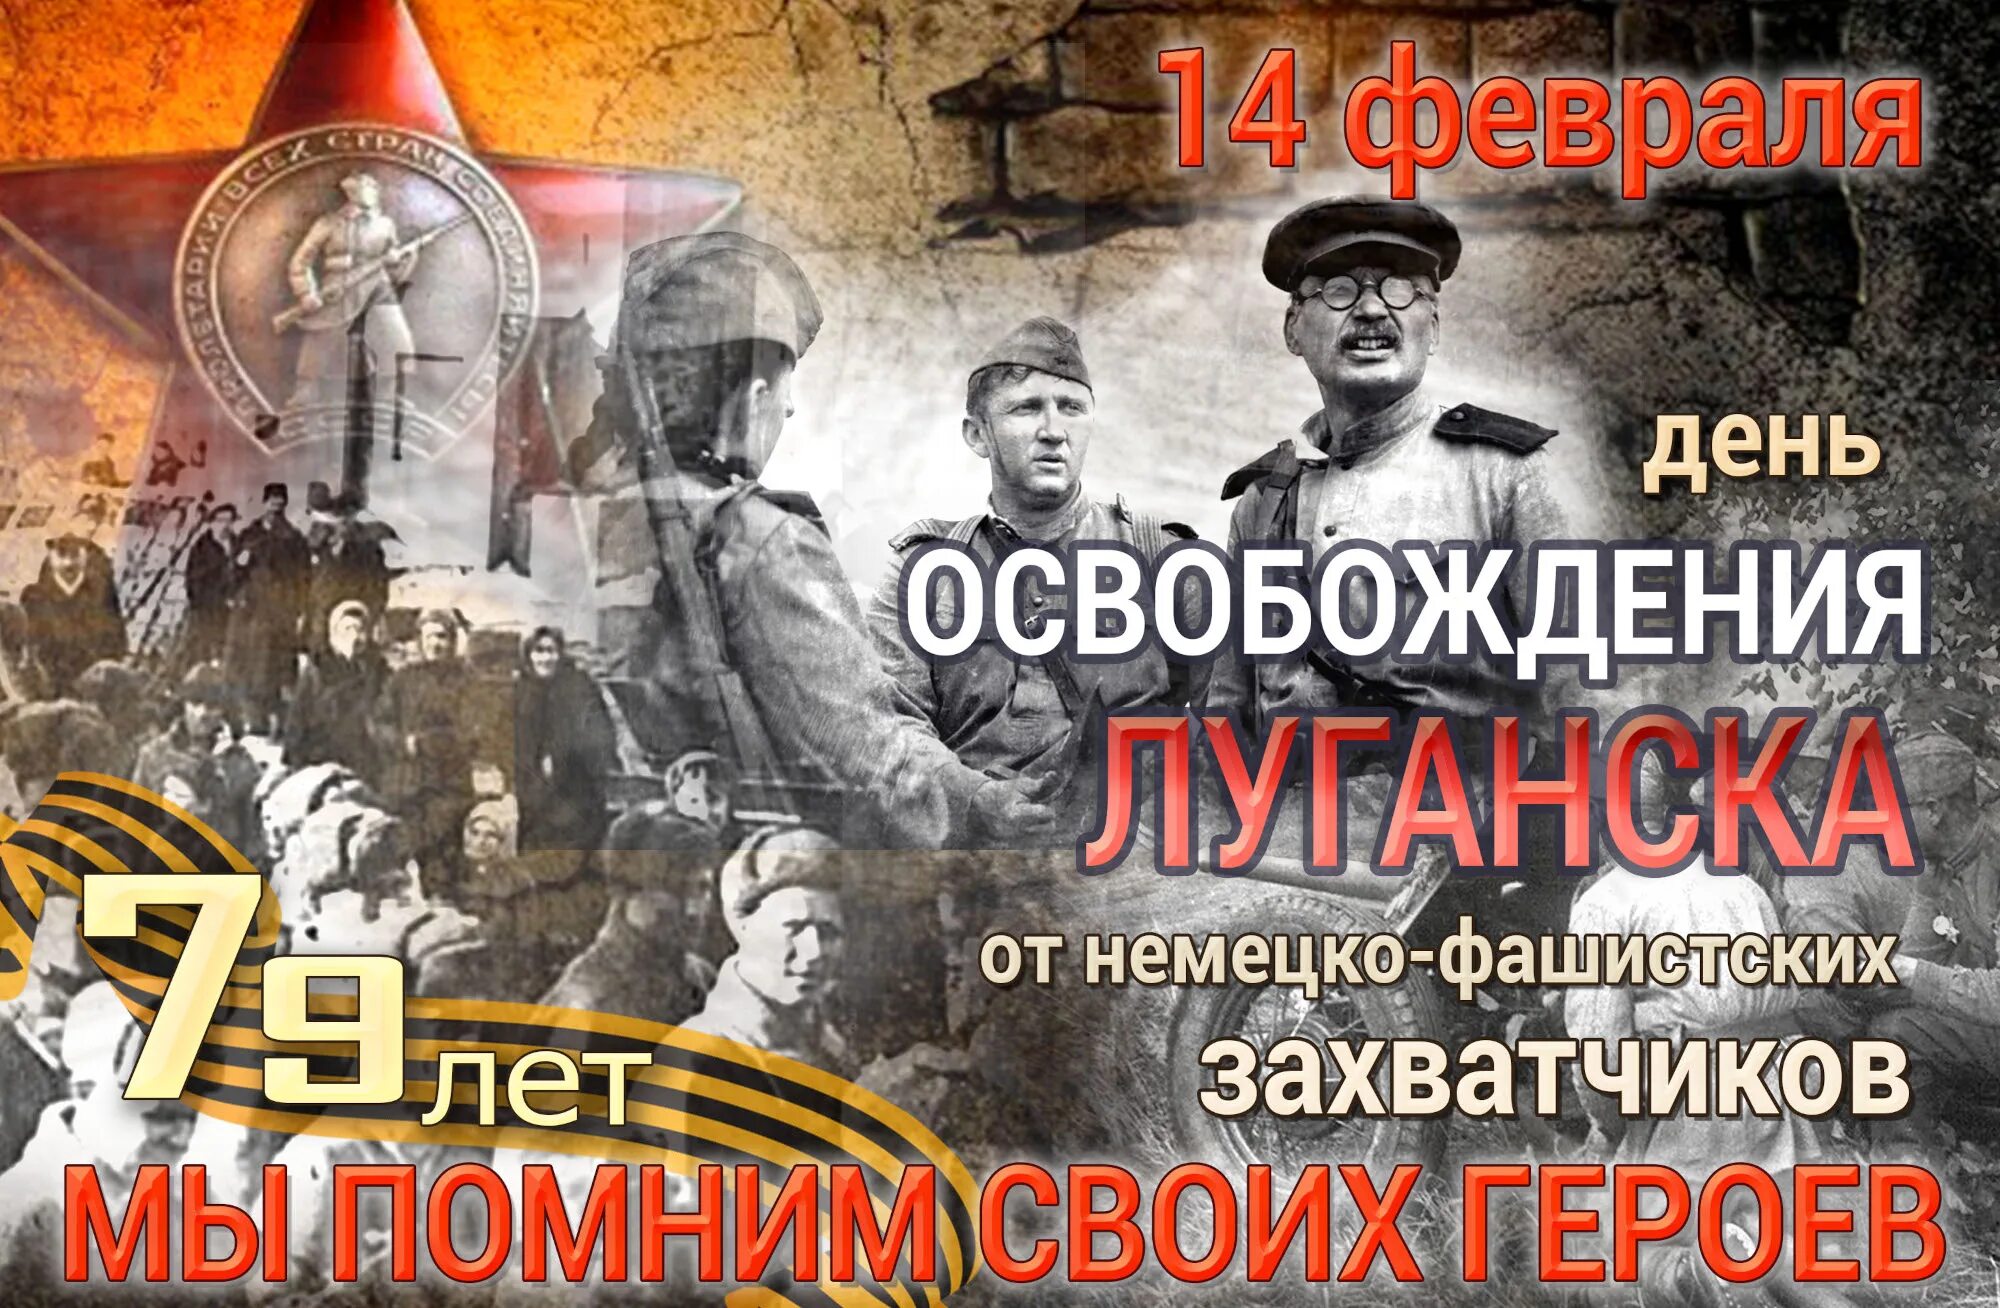 14 Февраля освобождение Луганска от немецко фашистских. 14 Февраля 1943 день освобождения Луганска. 14 Февр день освобождения. 14 Февраля день освобождения Луганска. Сценарий от немецко фашистских захватчиков